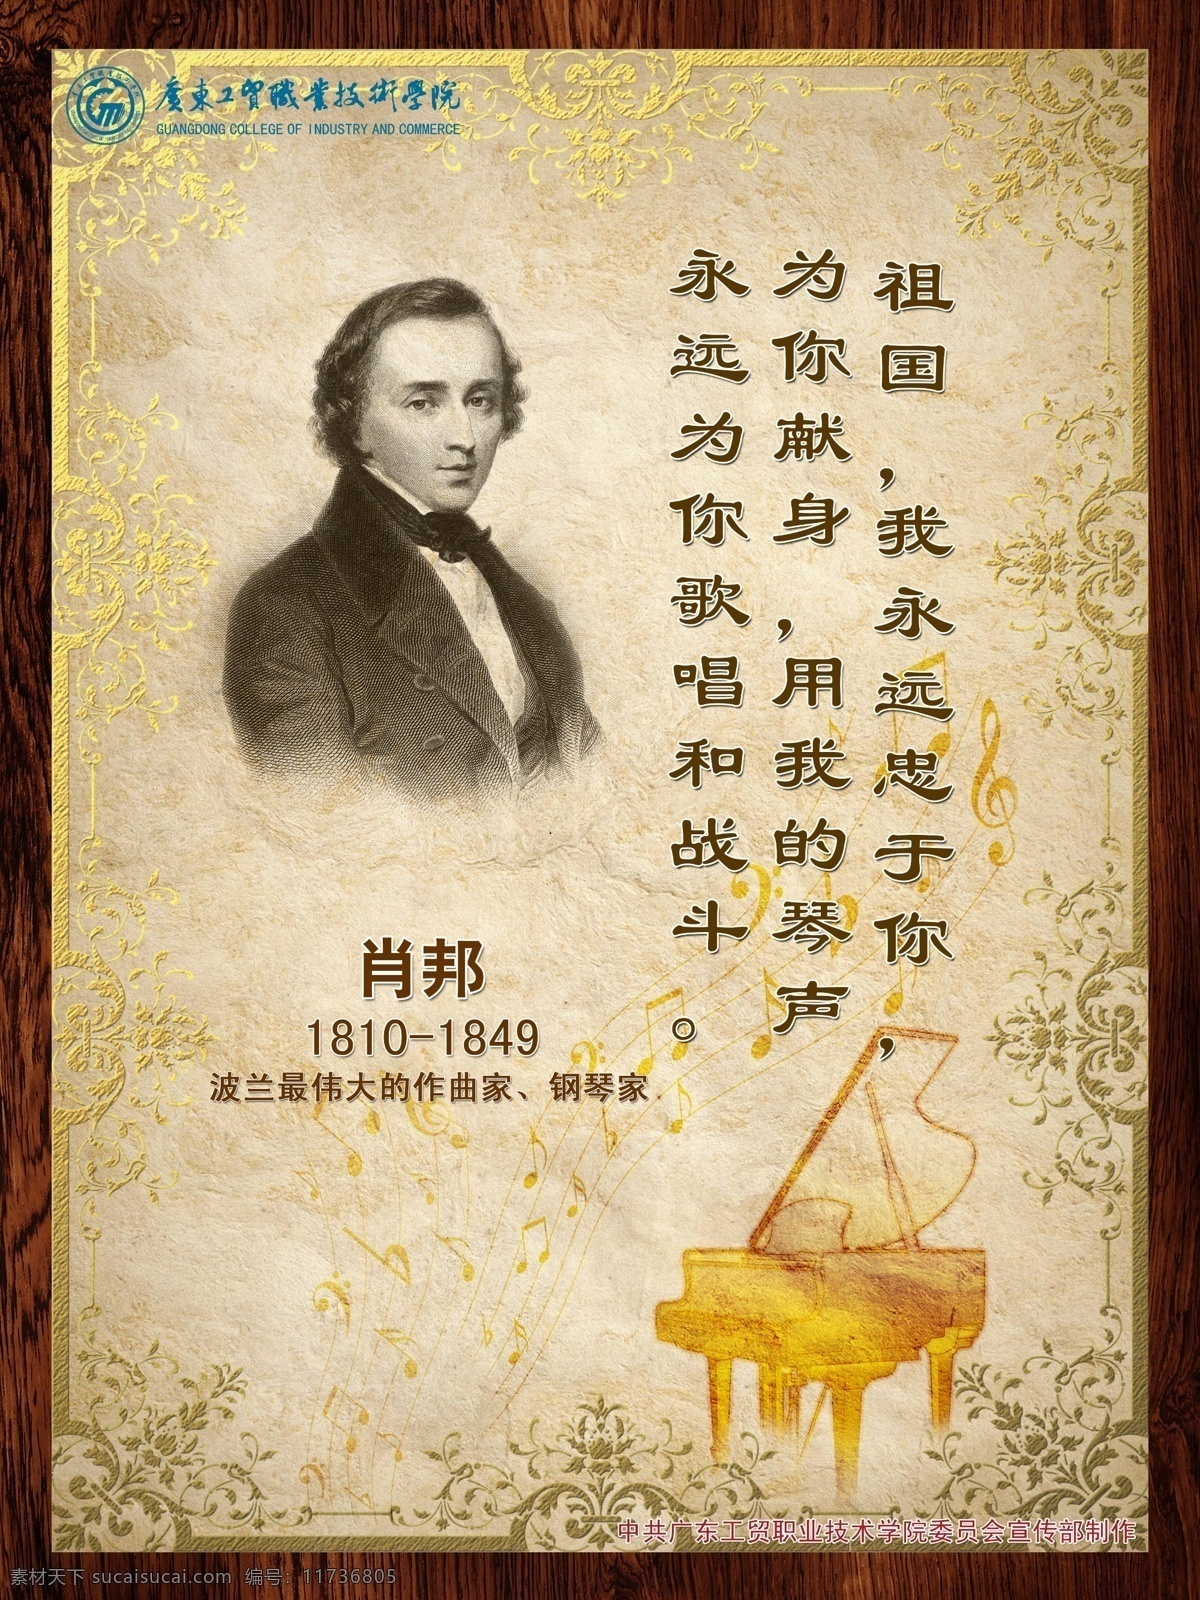 肖邦名言海报 肖邦 名言 海报 音乐 钢琴 古典 欧式 人物 肖像